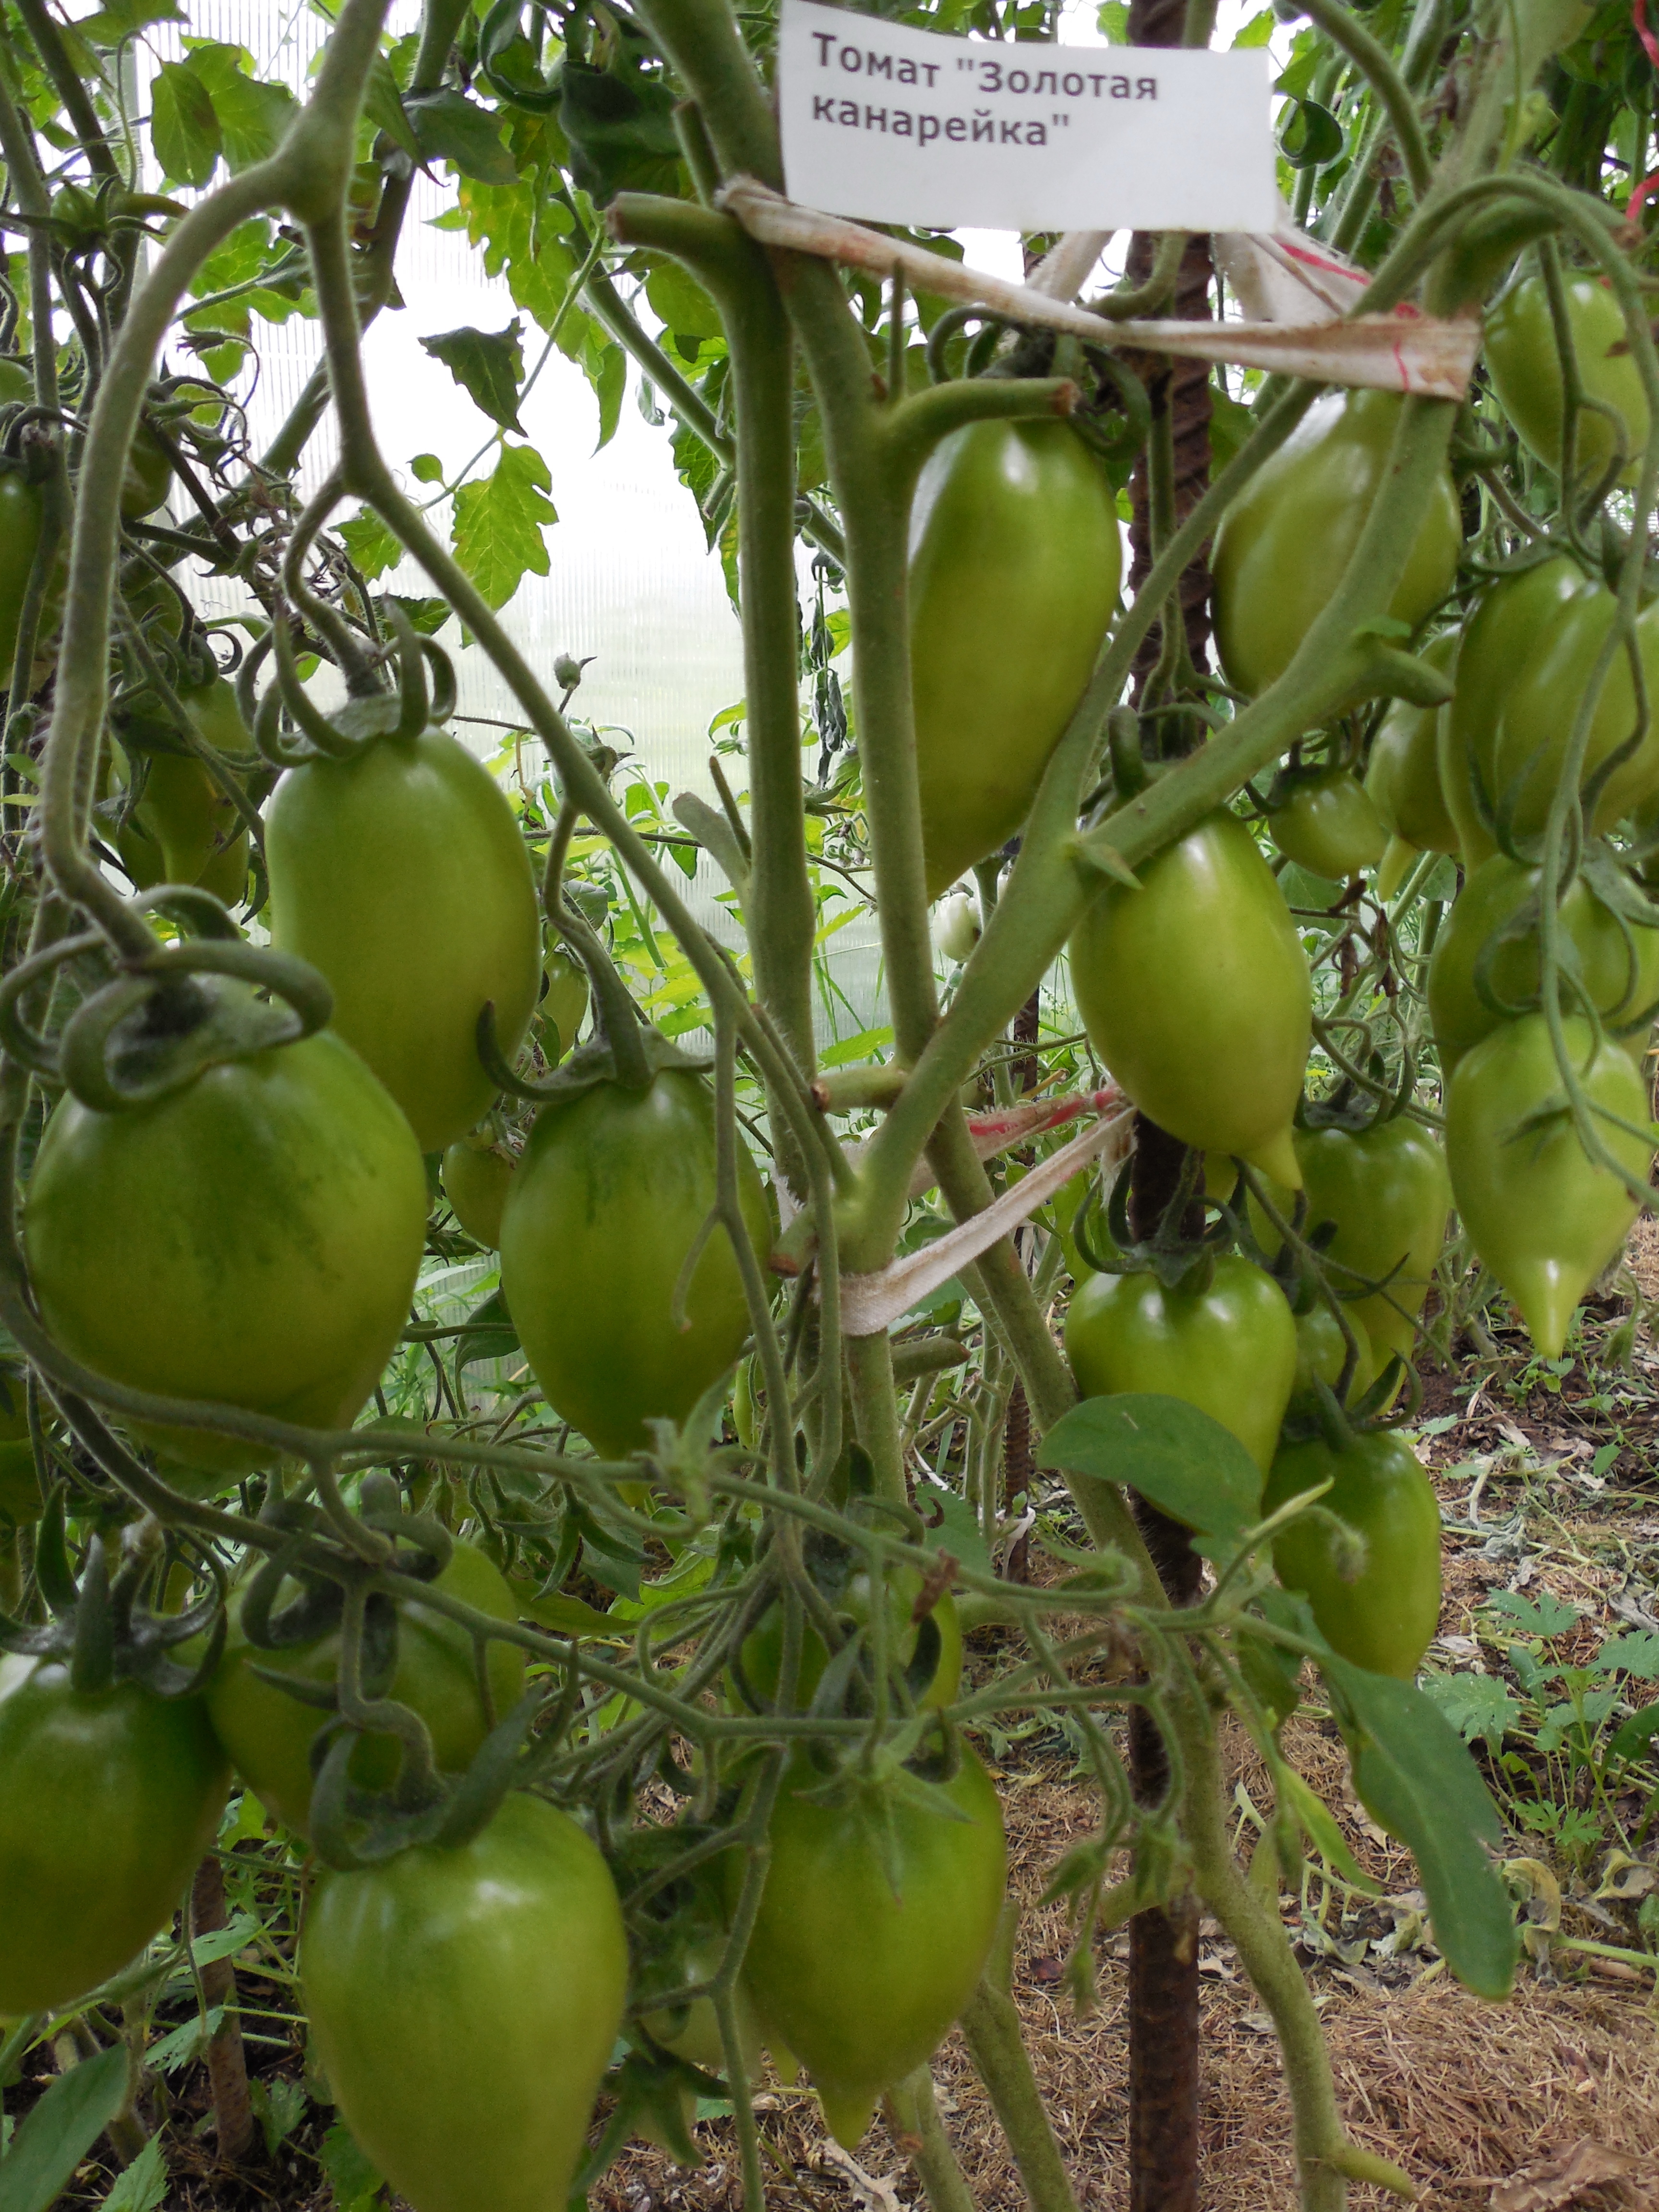 Сорт томатов "золотая канарейка": преимущества и агротехника - новости, статьи и обзоры